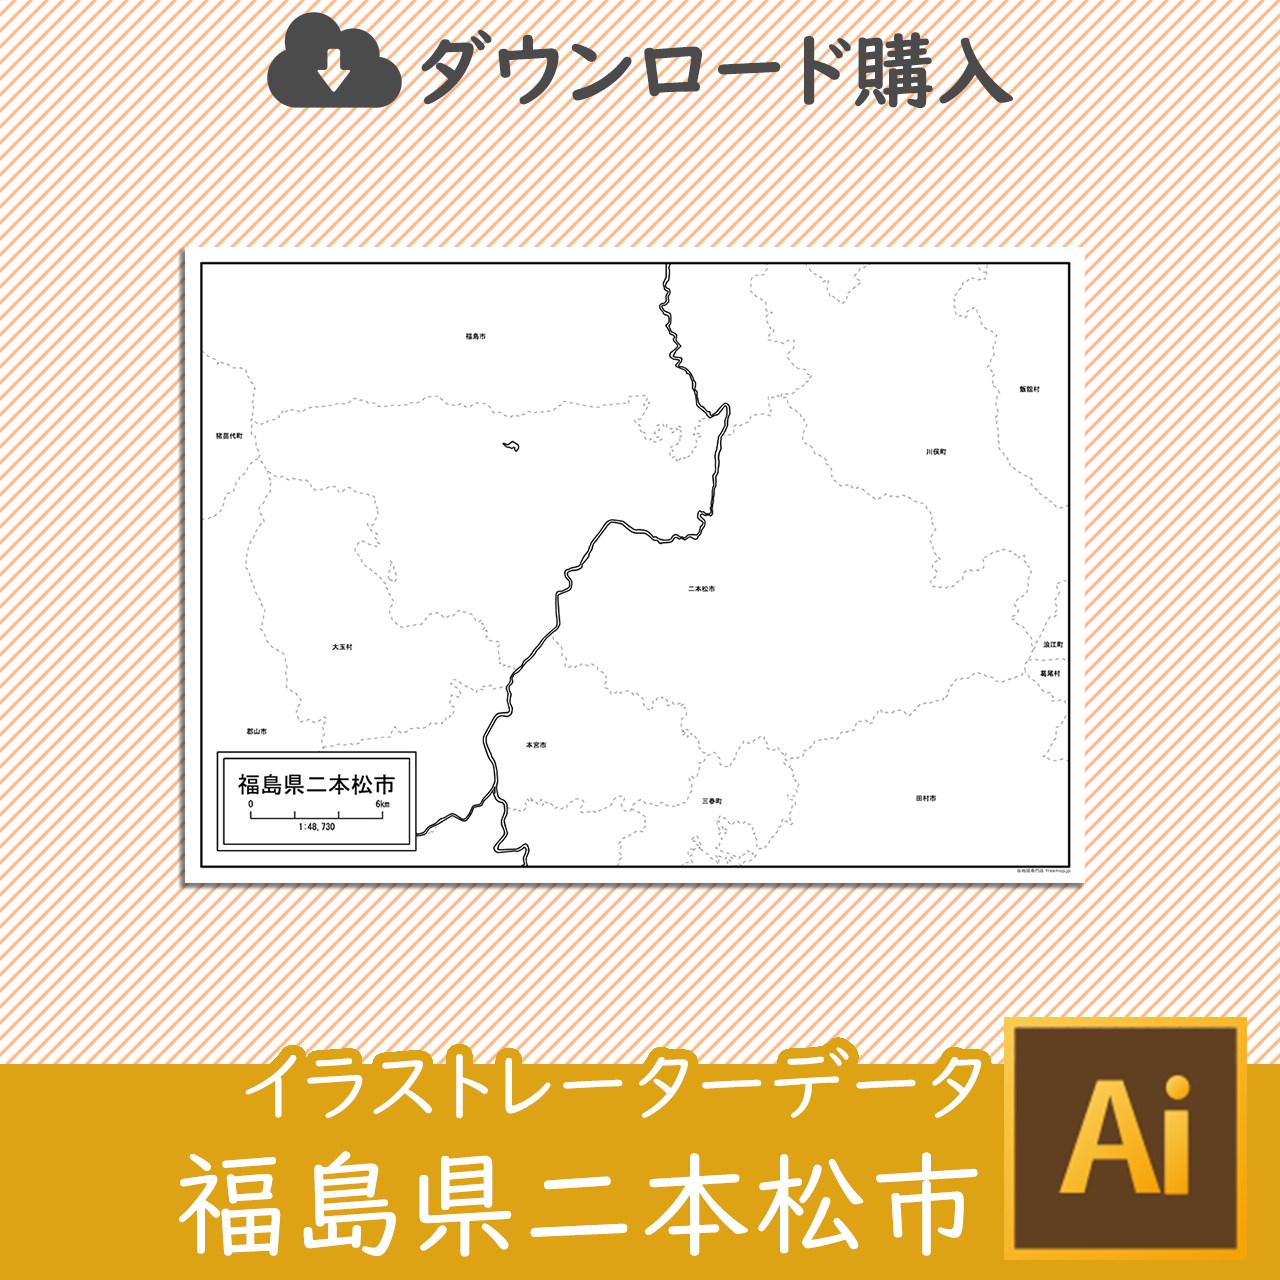 二本松市のサムネイル画像